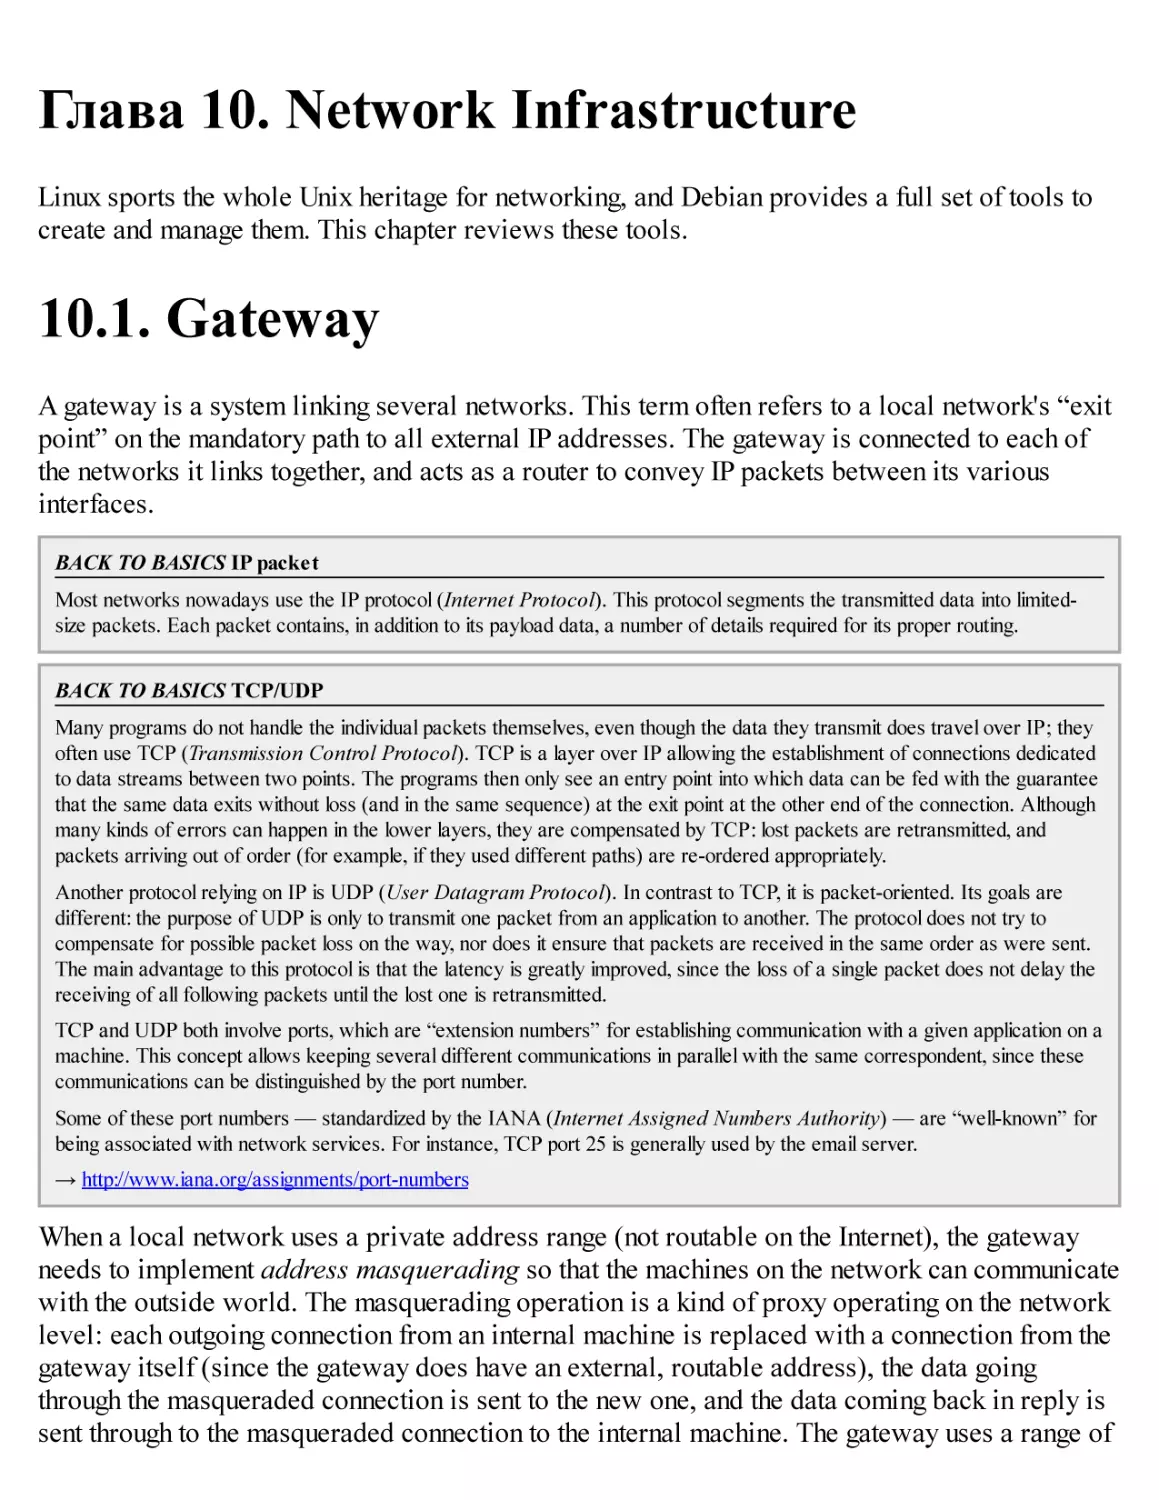 10. Network Infrastructure
10.1. Gateway